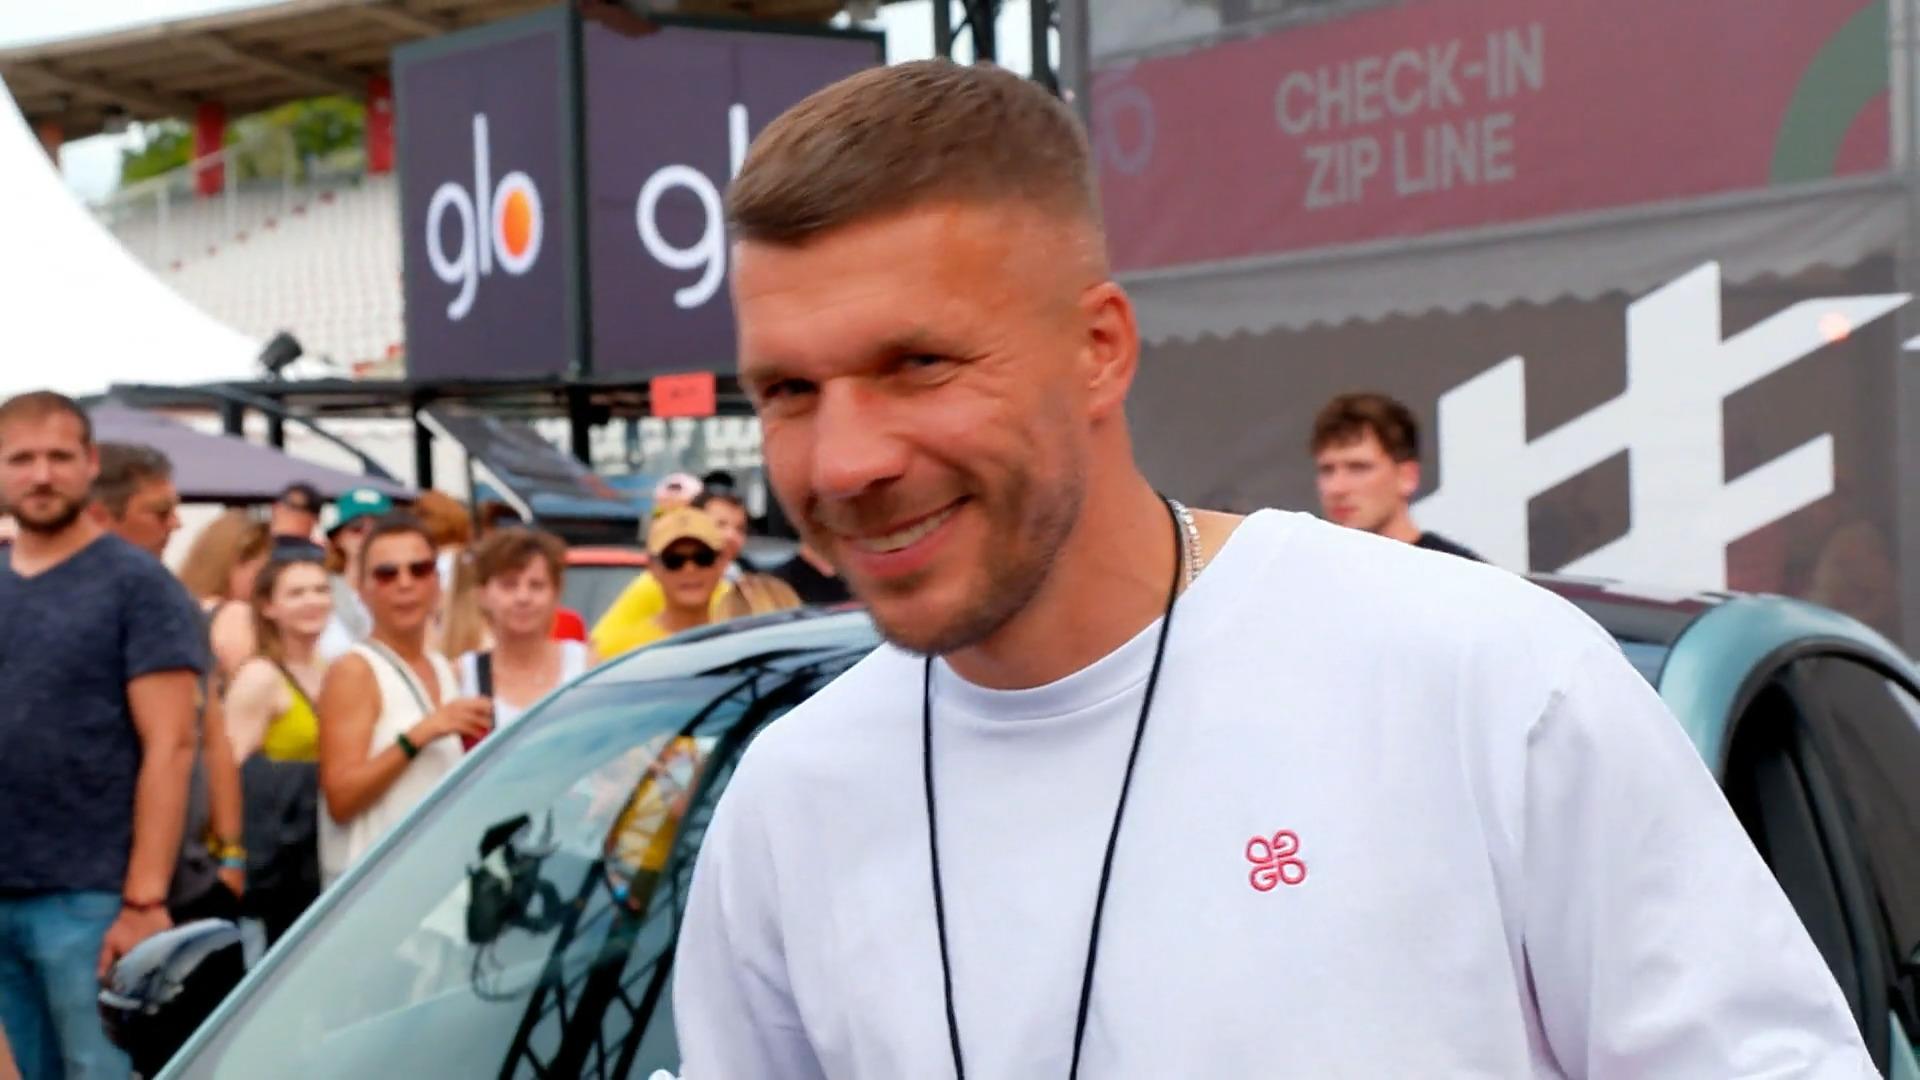 Lukas Podolski organisiert Festival auf dem Hockenheimring "Glücksgefühle"-Festival